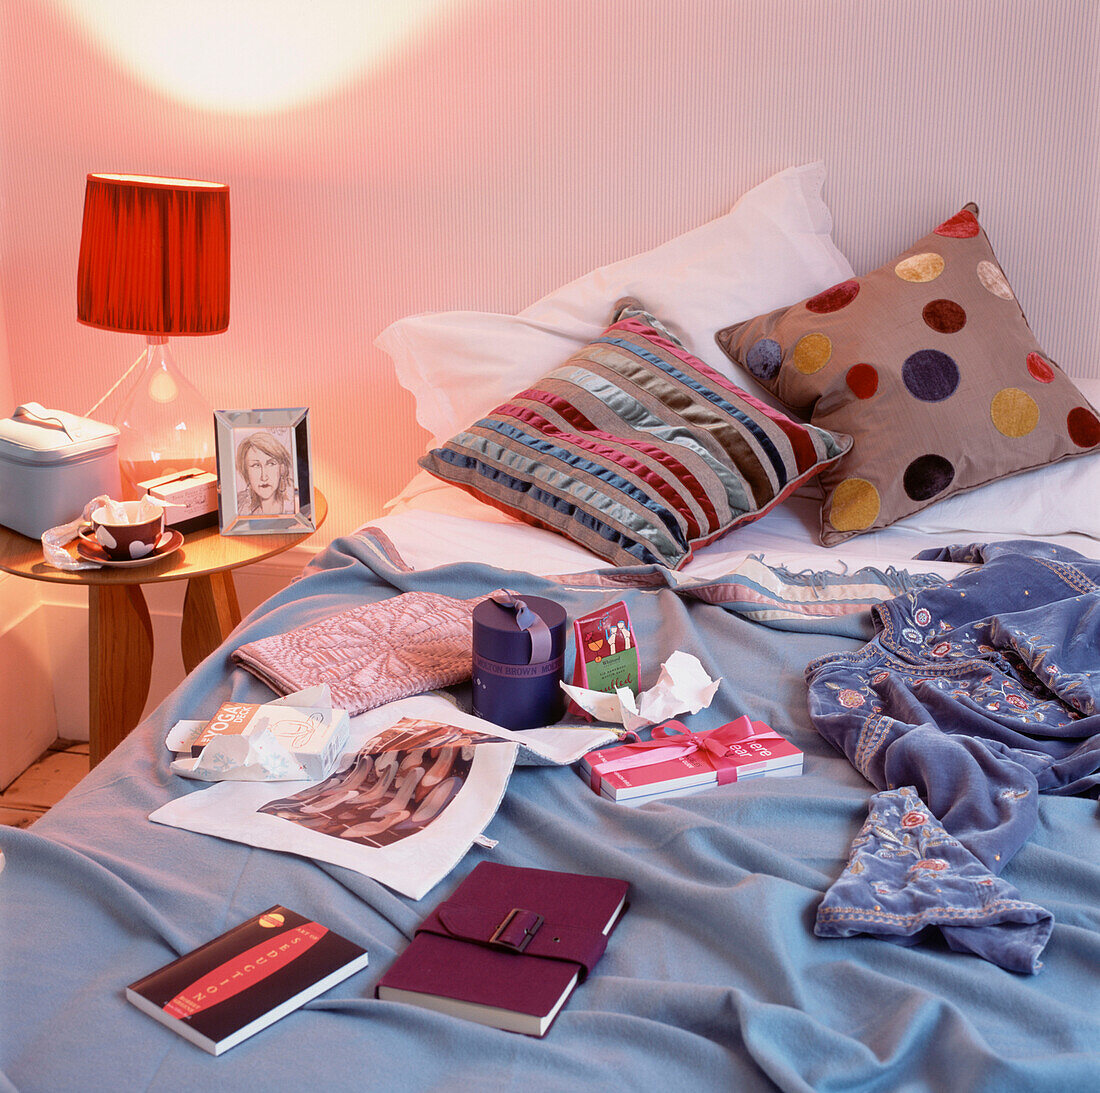 Schlafzimmer mit geöffneten Geschenken auf dem Bett